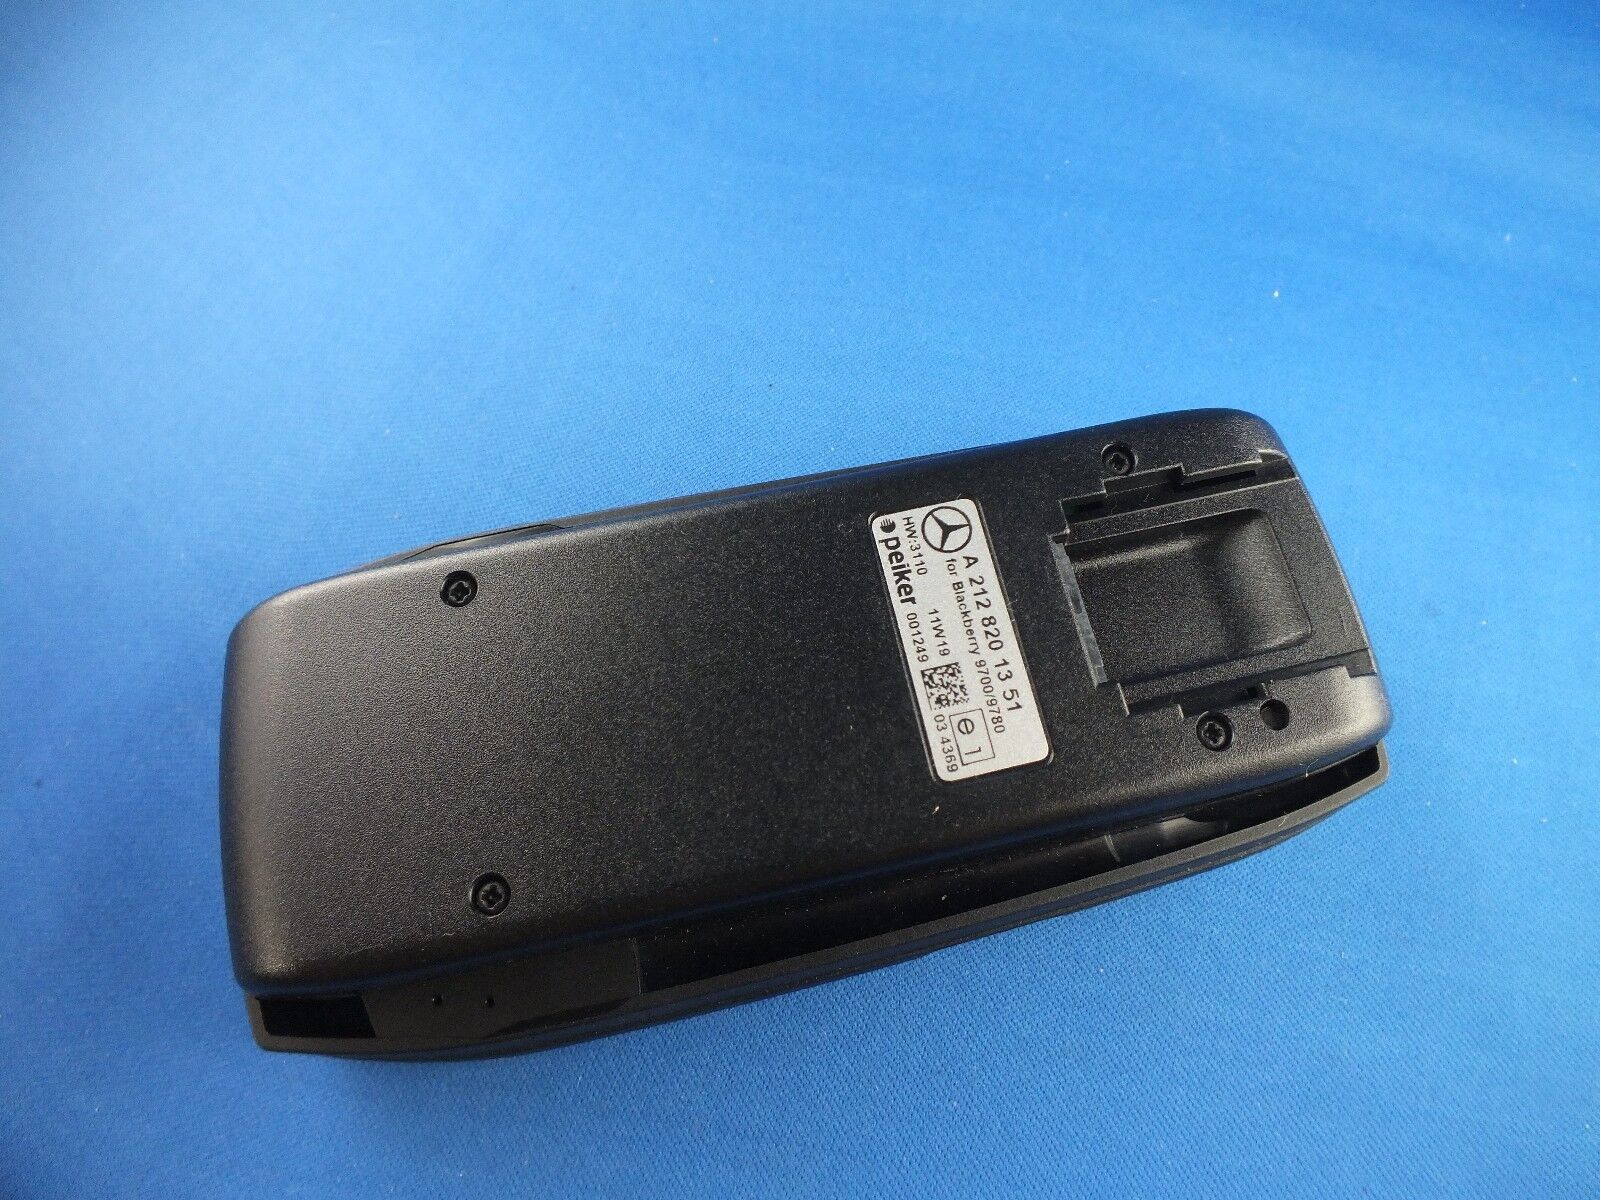 Mercedes UHI Halterung Blackberry 9700 9780 A2128201351 NEU Ladeschale Adapter